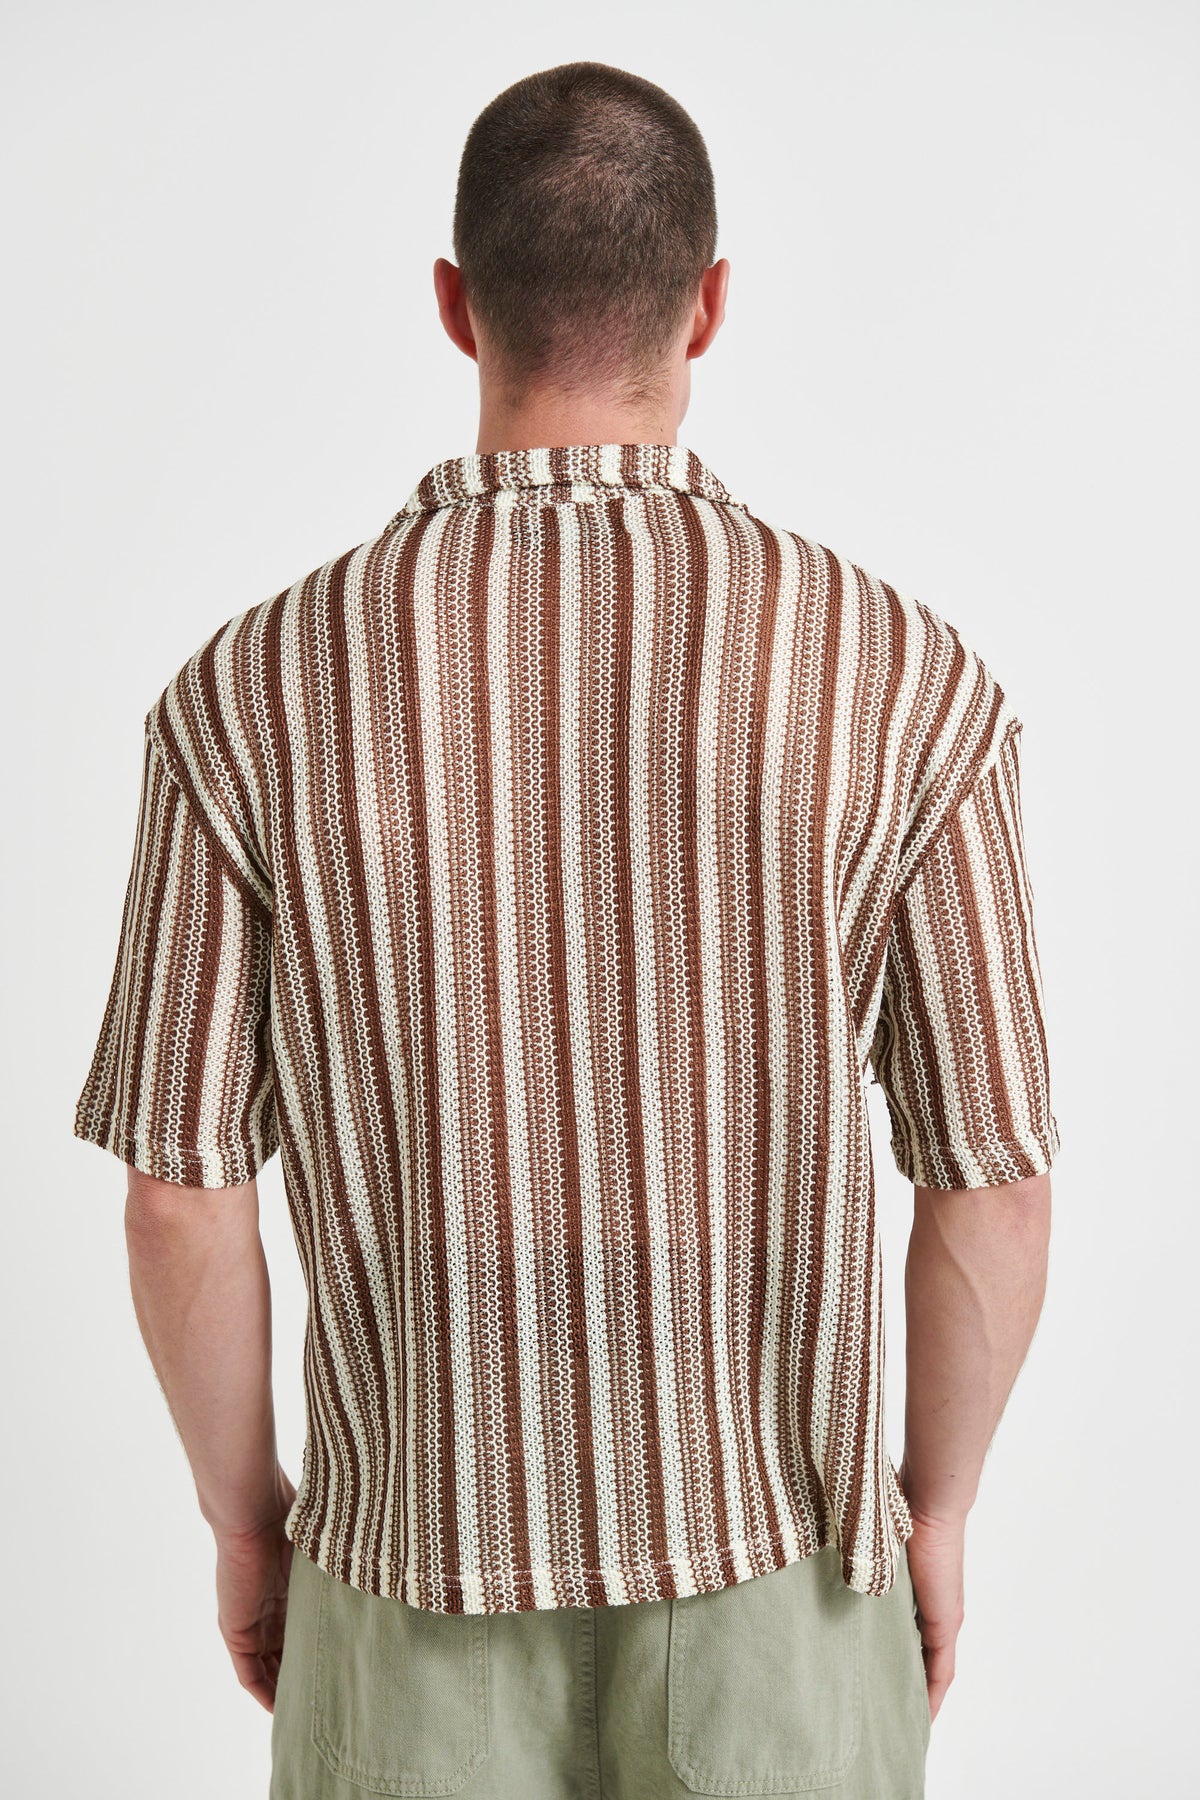 Raf Cropped Shirt Stripe Crochet Tan